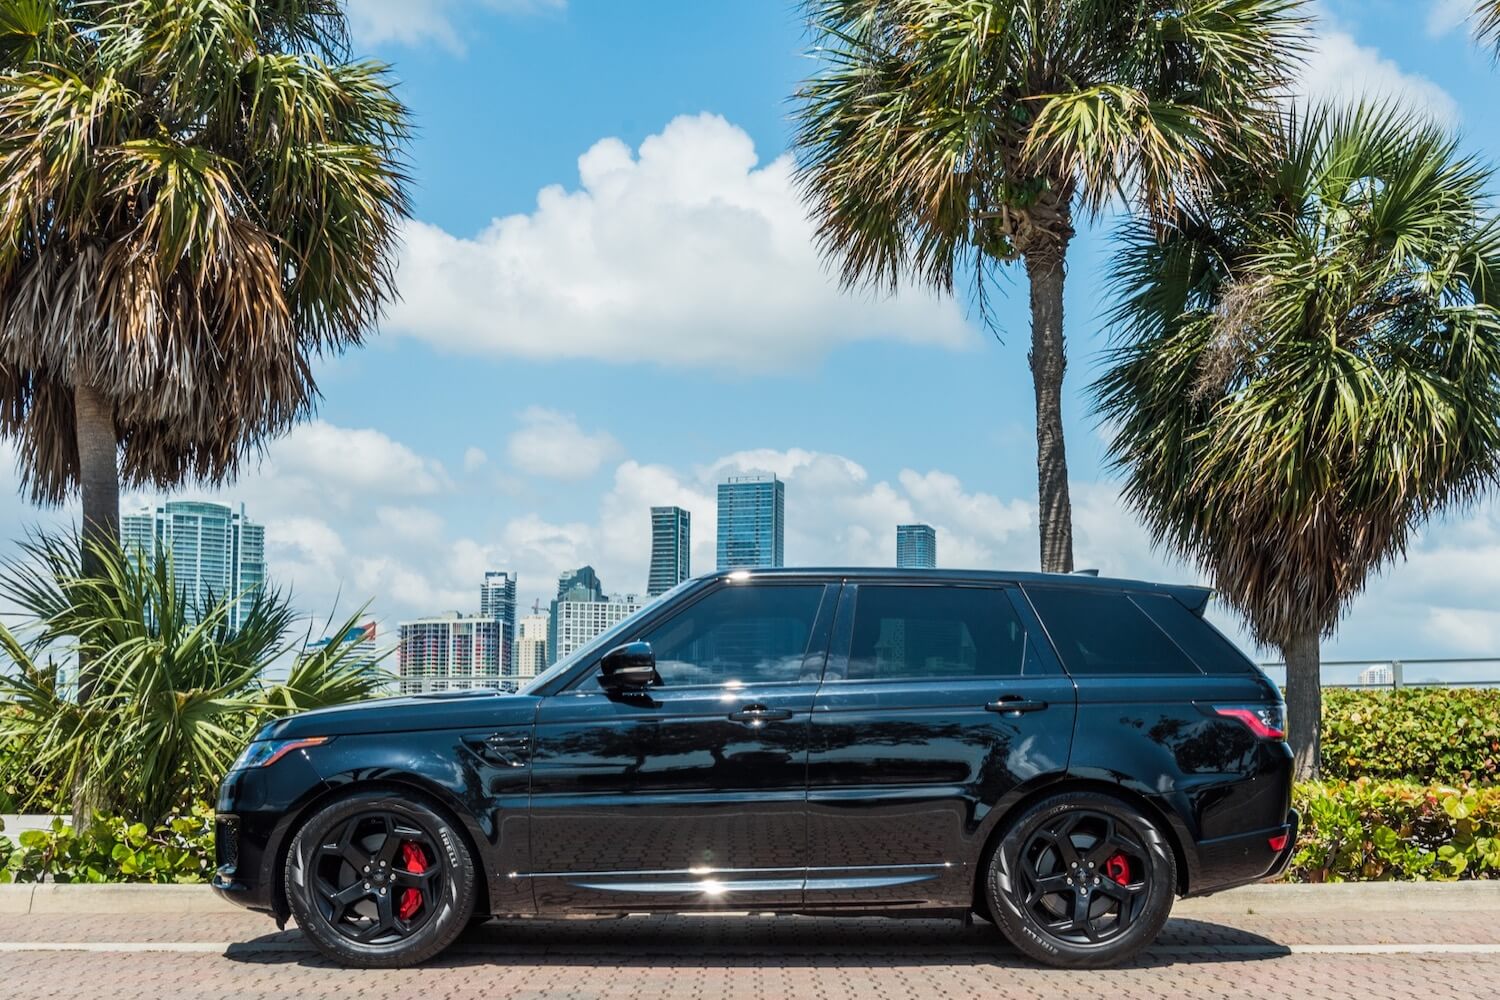 Rent a Range Rover in Miami